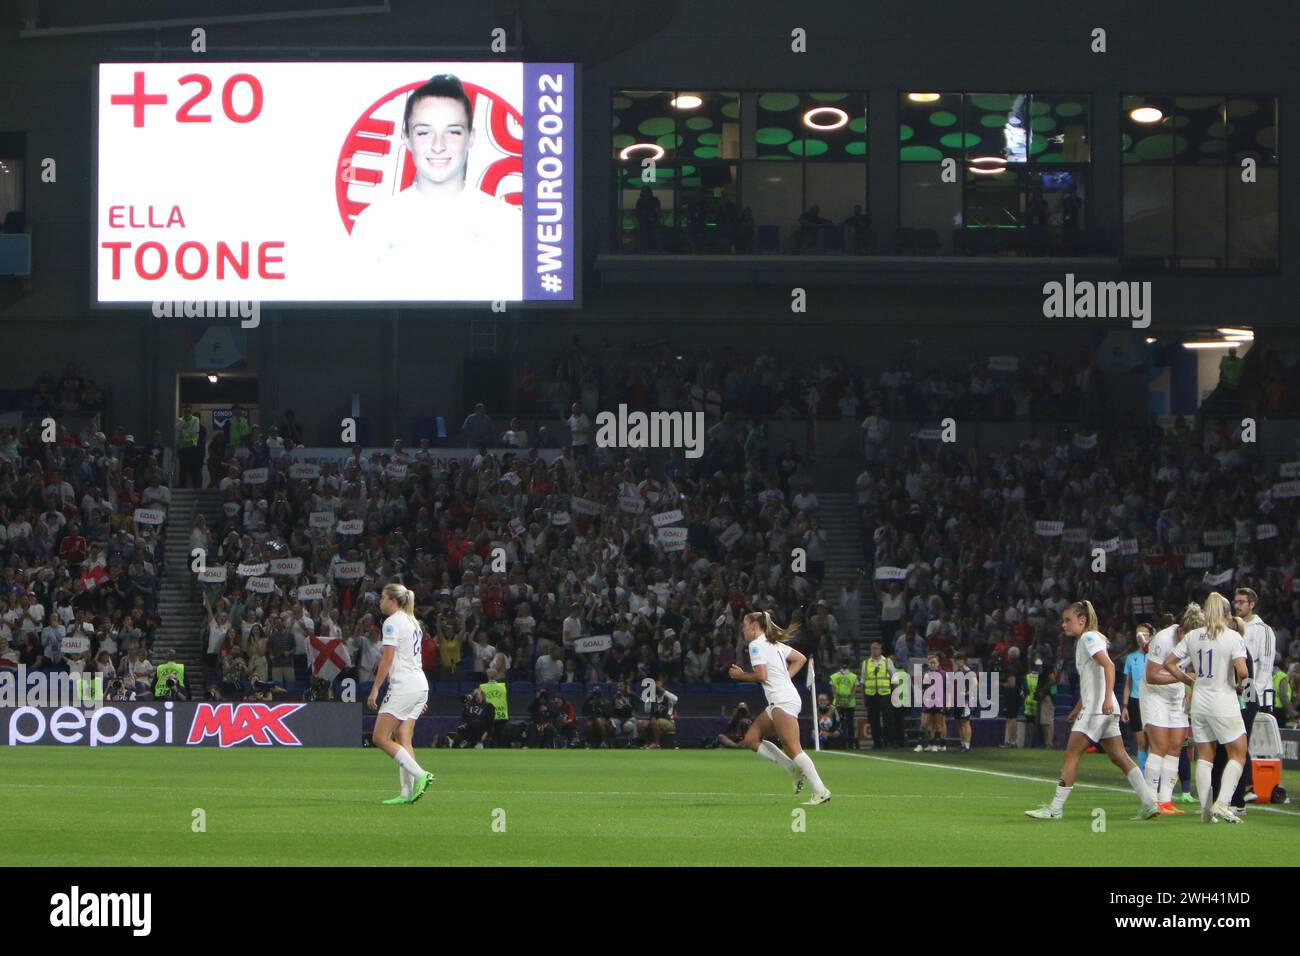 Ella Toone en la pantalla grande después de marcar el gol Inglaterra - España UEFA Femens Euro Brighton Community Stadium (Amex Stadium) el 20 de julio de 2022 Foto de stock